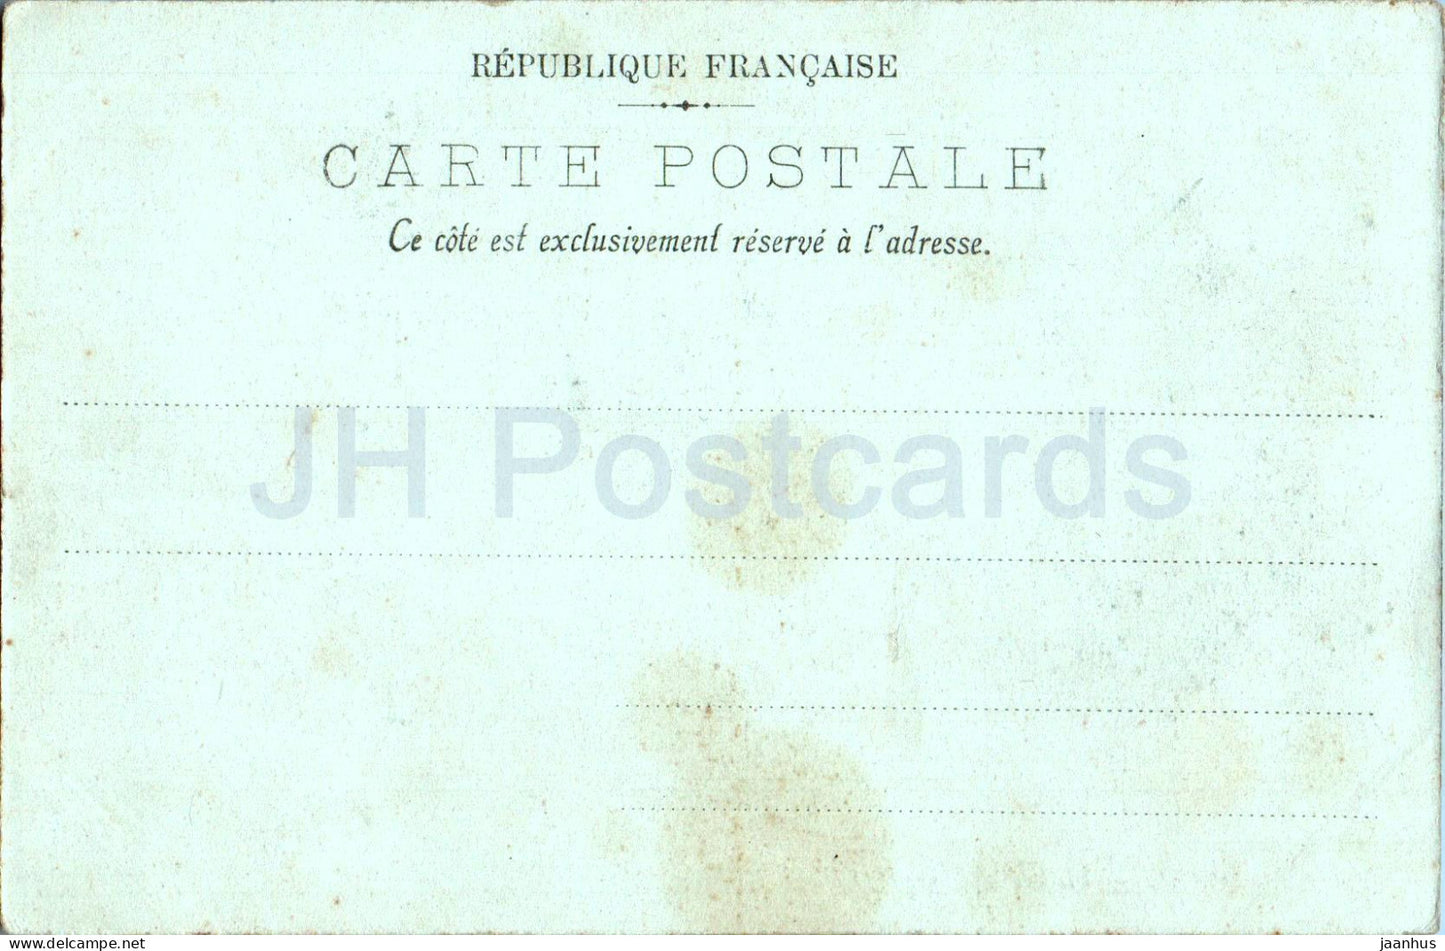 Caen - Vieilles Maisons - alte Häuser - 12 - alte Postkarte - Frankreich - unbenutzt 